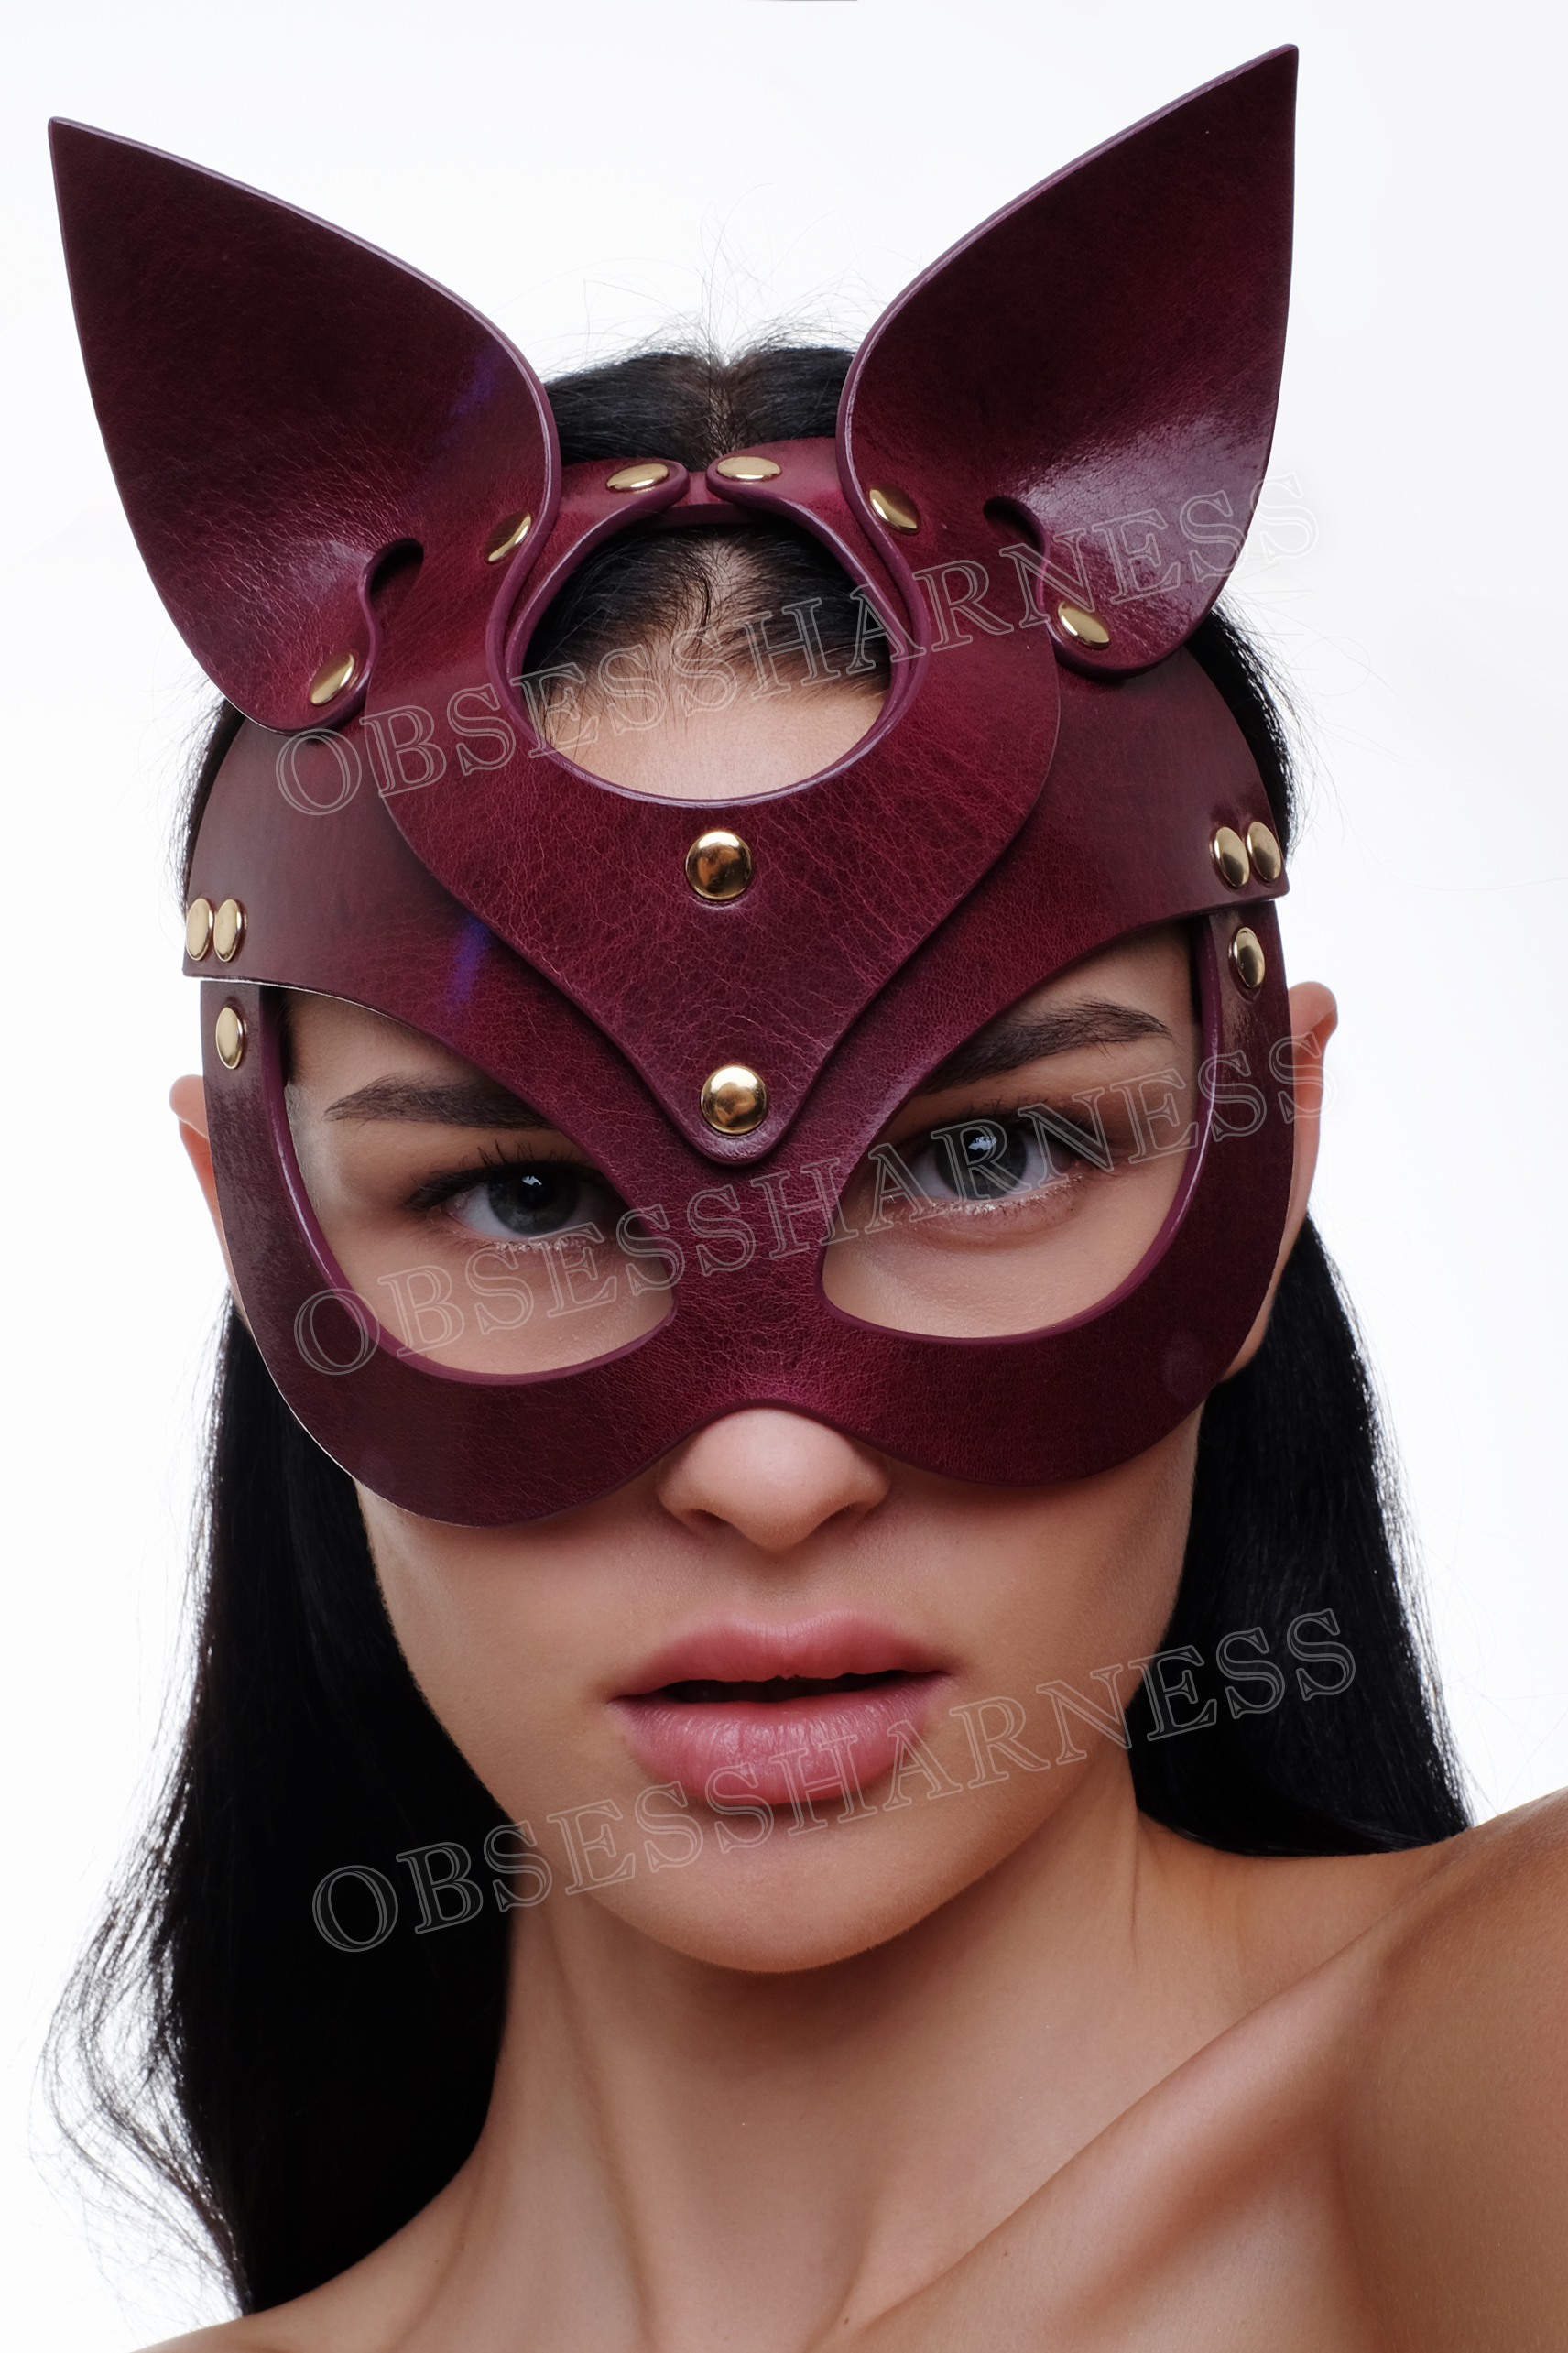 Sexy cat mask purple - Obsessharness